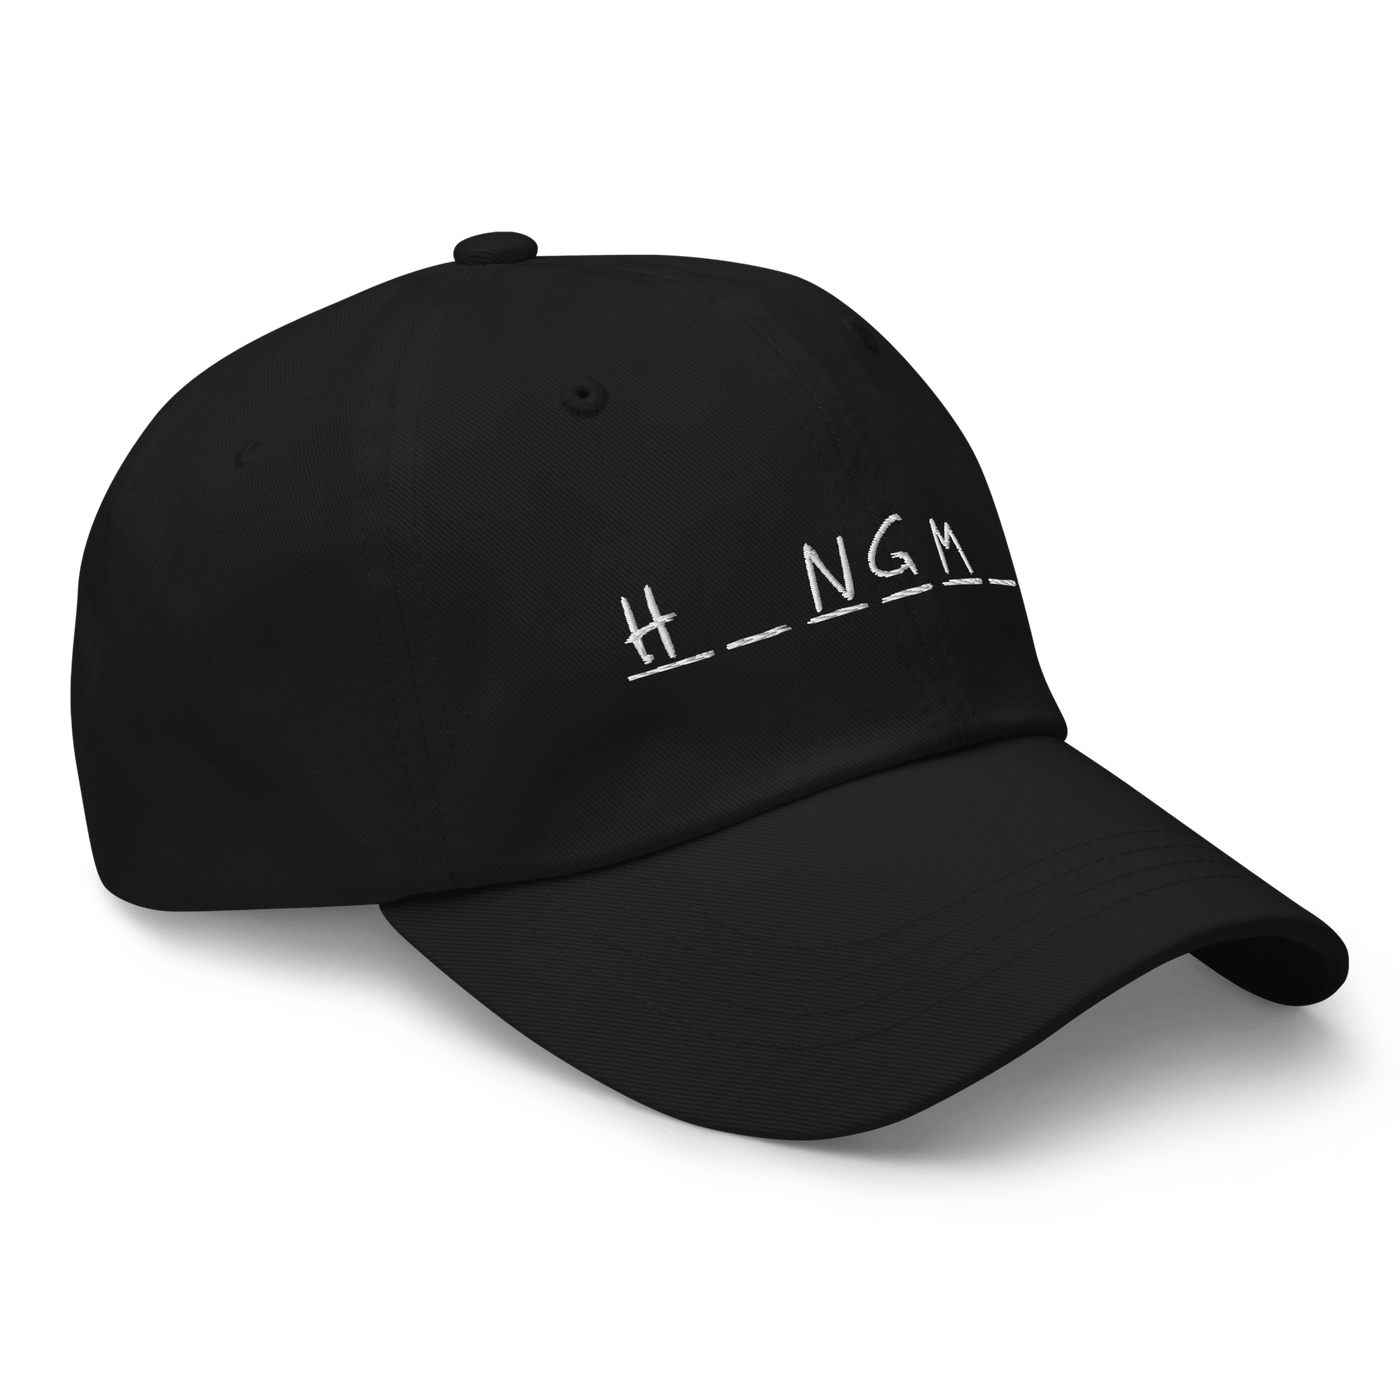 Hangman Dad hat - Black - - Just Another Cap Store